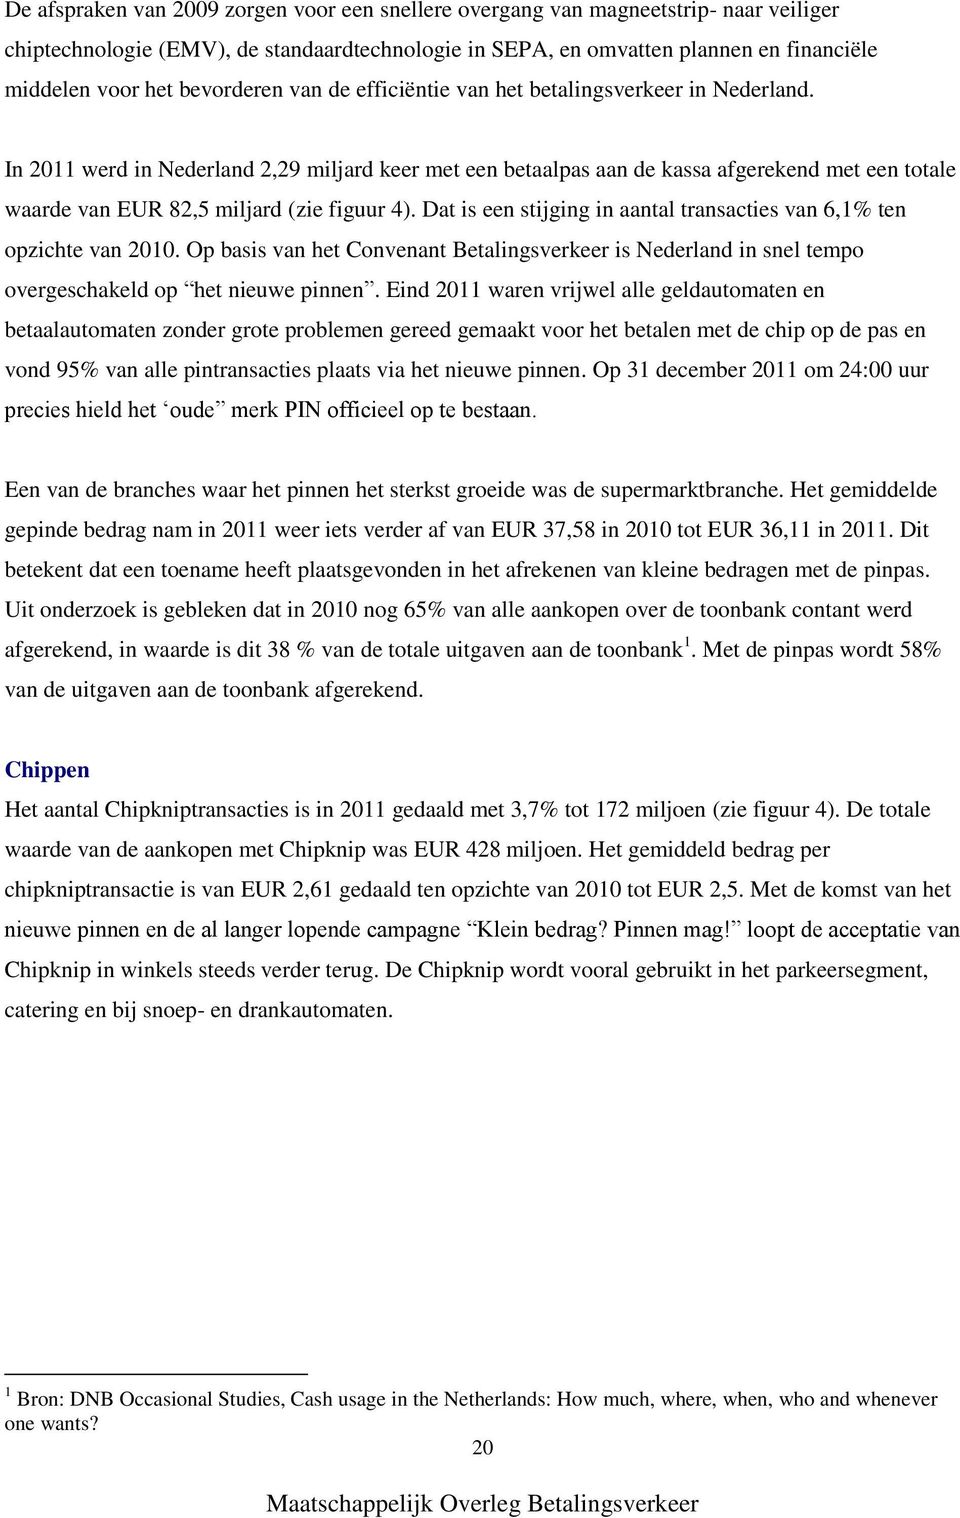 In 2011 werd in Nederland 2,29 miljard keer met een betaalpas aan de kassa afgerekend met een totale waarde van EUR 82,5 miljard (zie figuur 4).